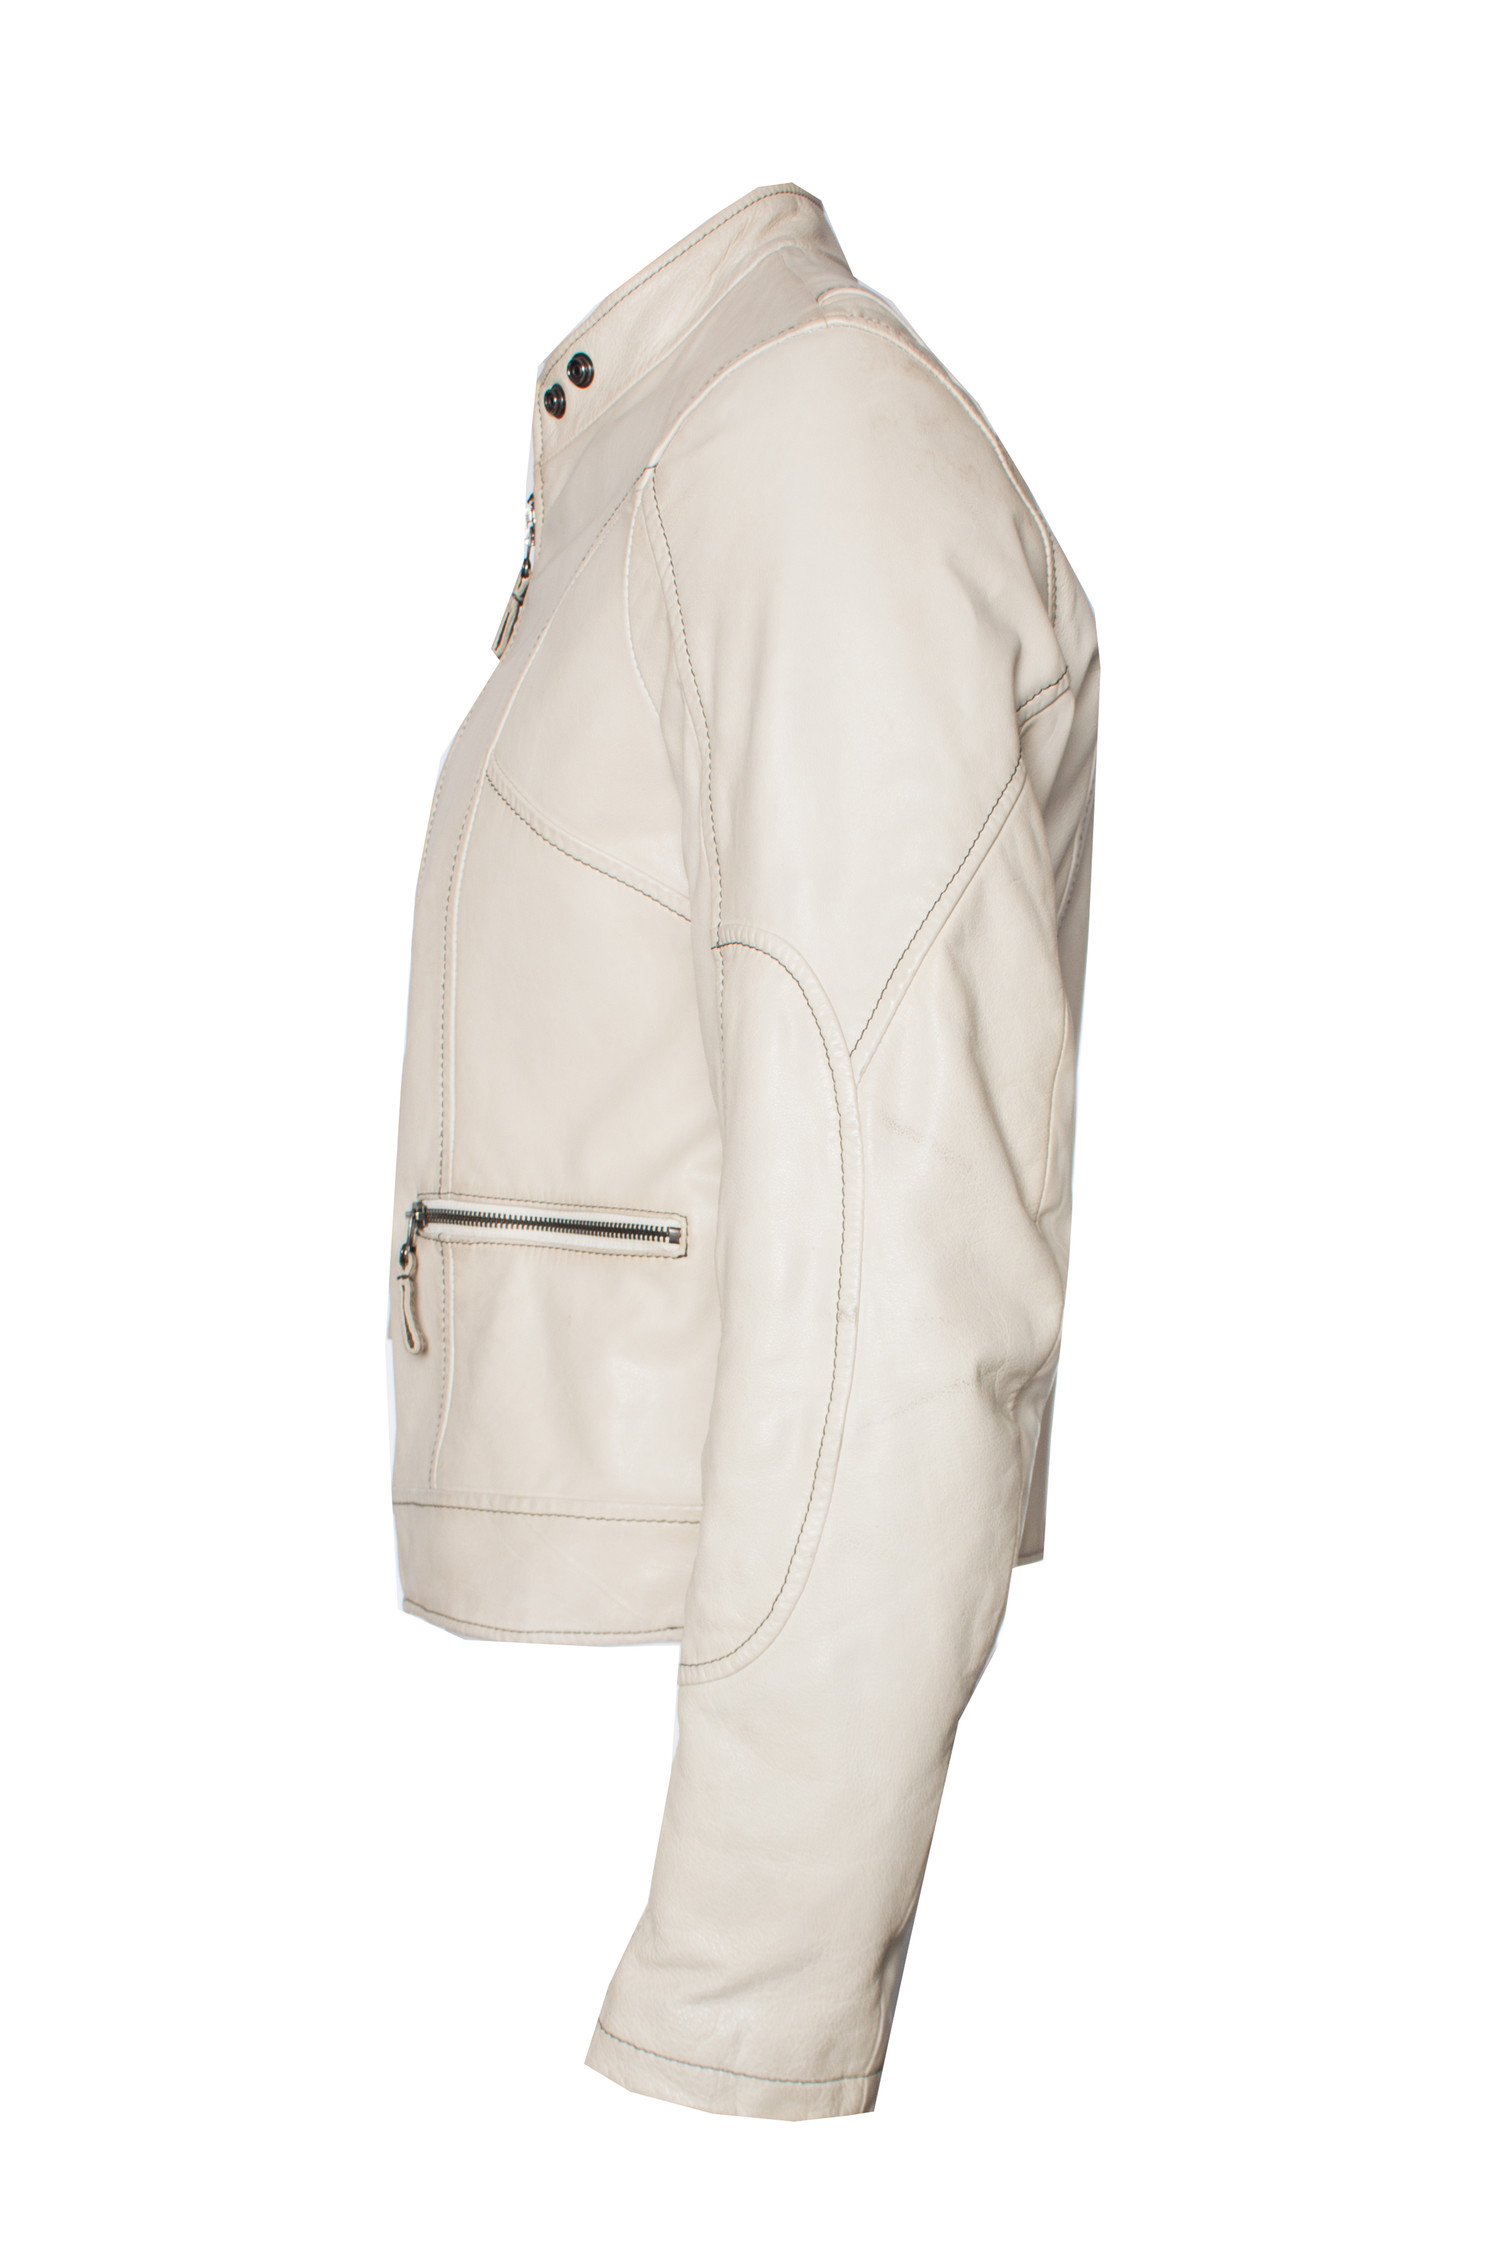 Voorman Badkamer Verandert in Armani Jeans, off-white leren jas in maat I48/M. - Unique Designer Pieces